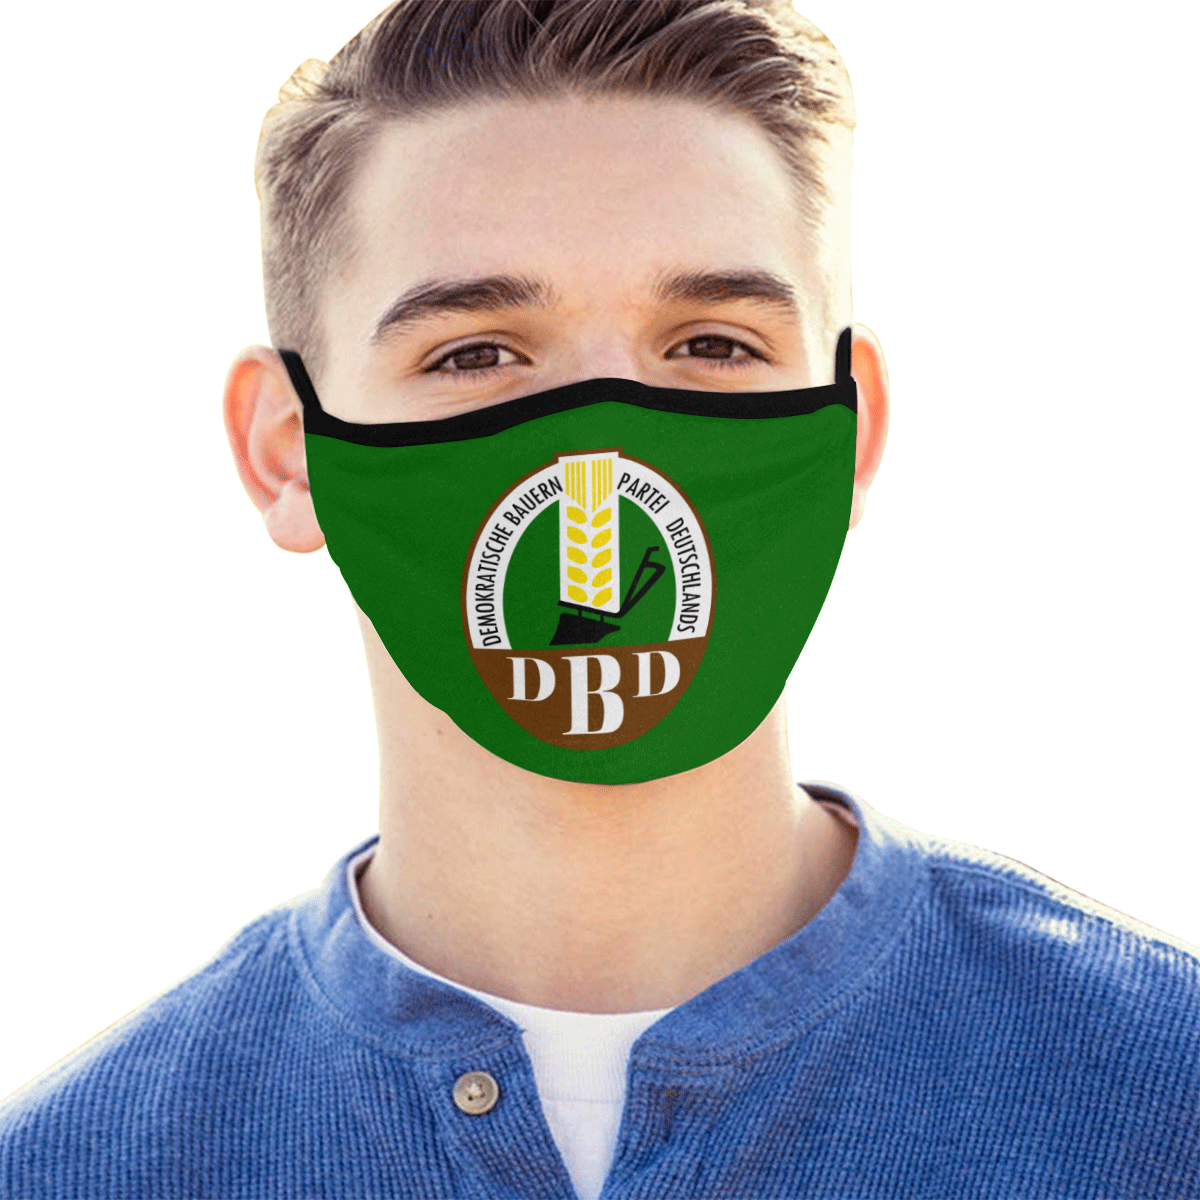 Demokratischen Bauernpartei Deutschlands (DBD) Mouth Mask